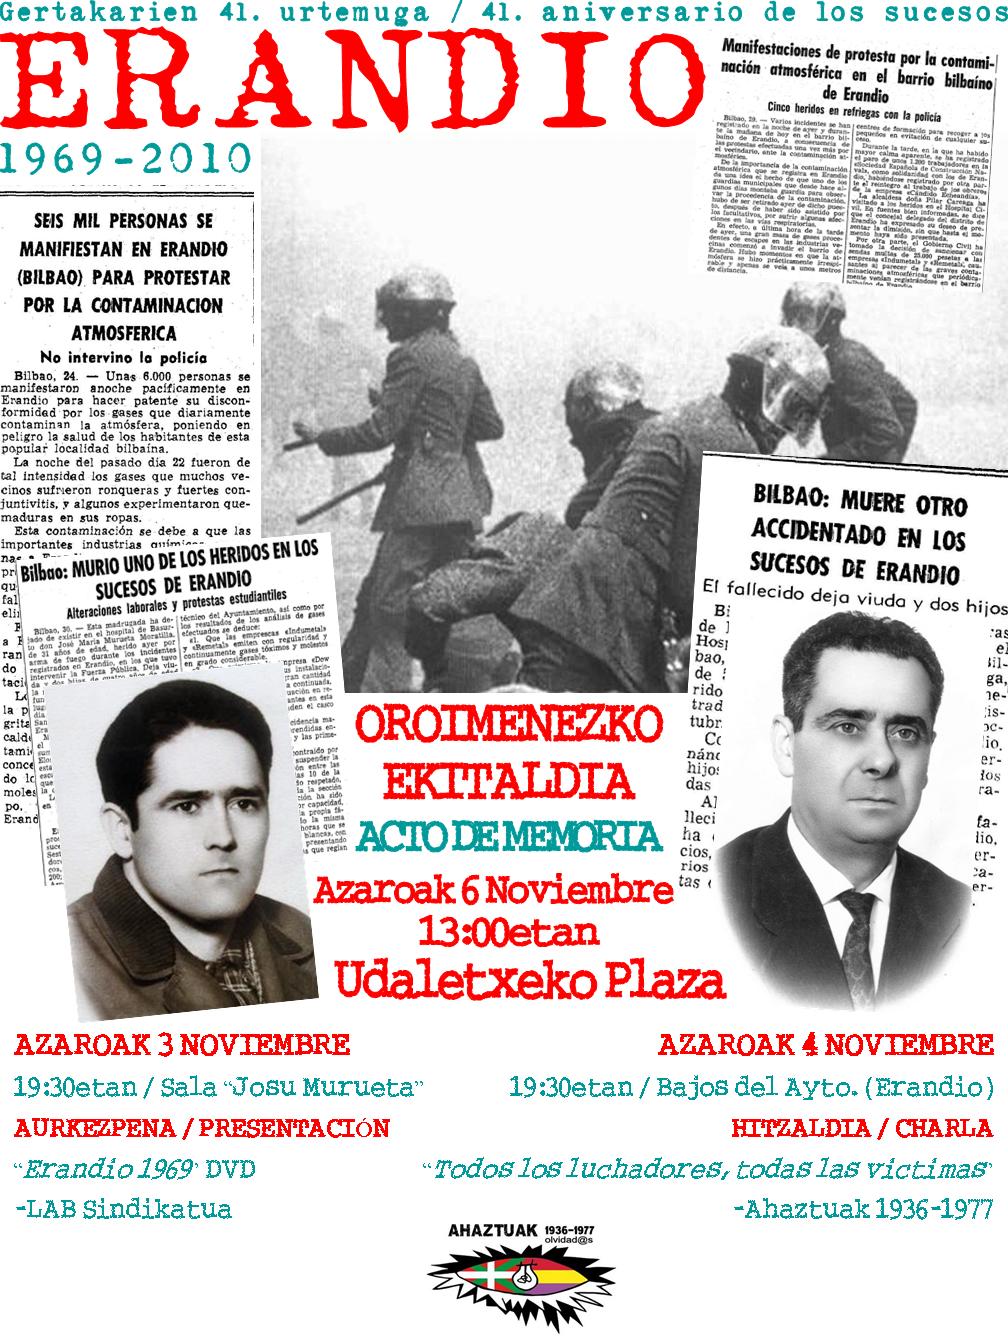 Antón Fernández y Josu Murueta encontraron la muerte en los sucesos de octubre de 1969. Foto: ahaztuak1936-1977.blogspot.com.es